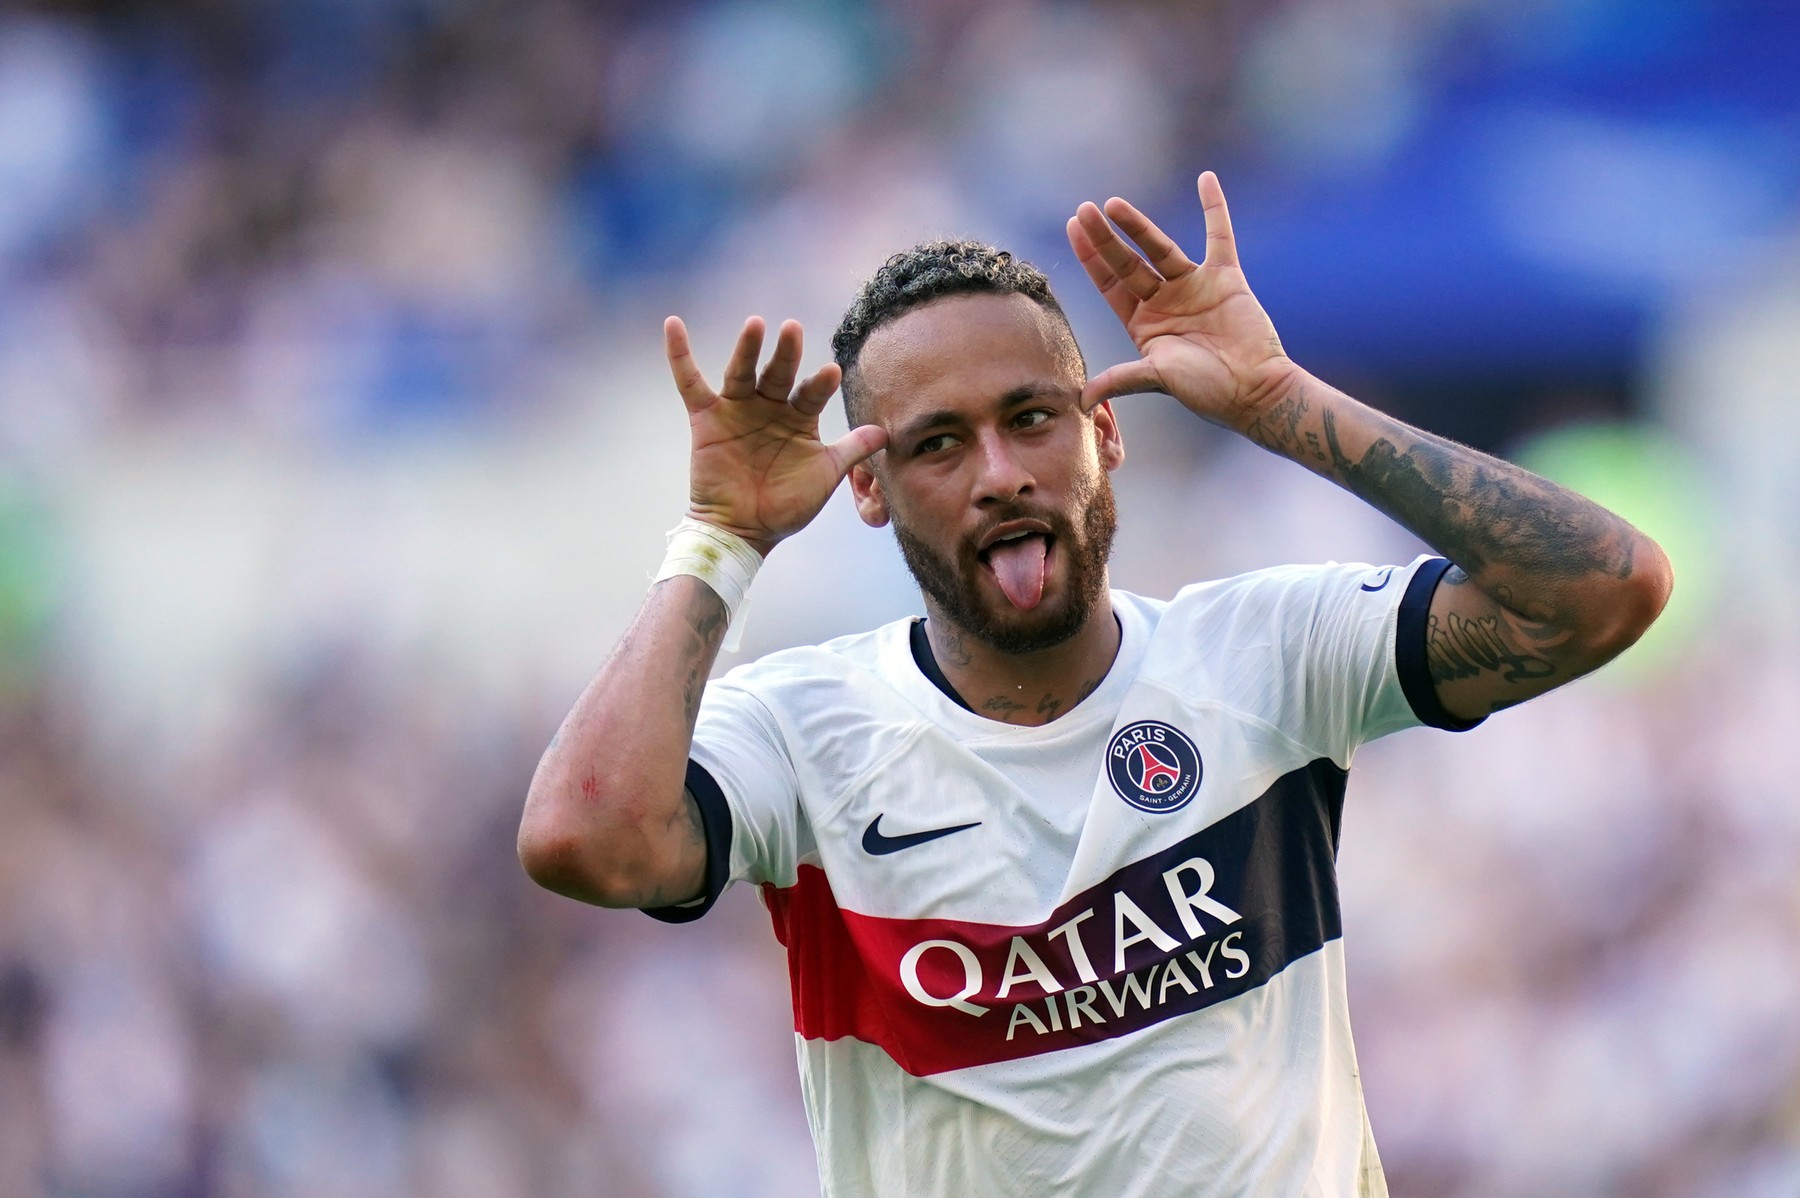 Se face: Neymar pleacă de la PSG! Două oferte au venit deja, dar brazilianul o așteaptă pe a treia